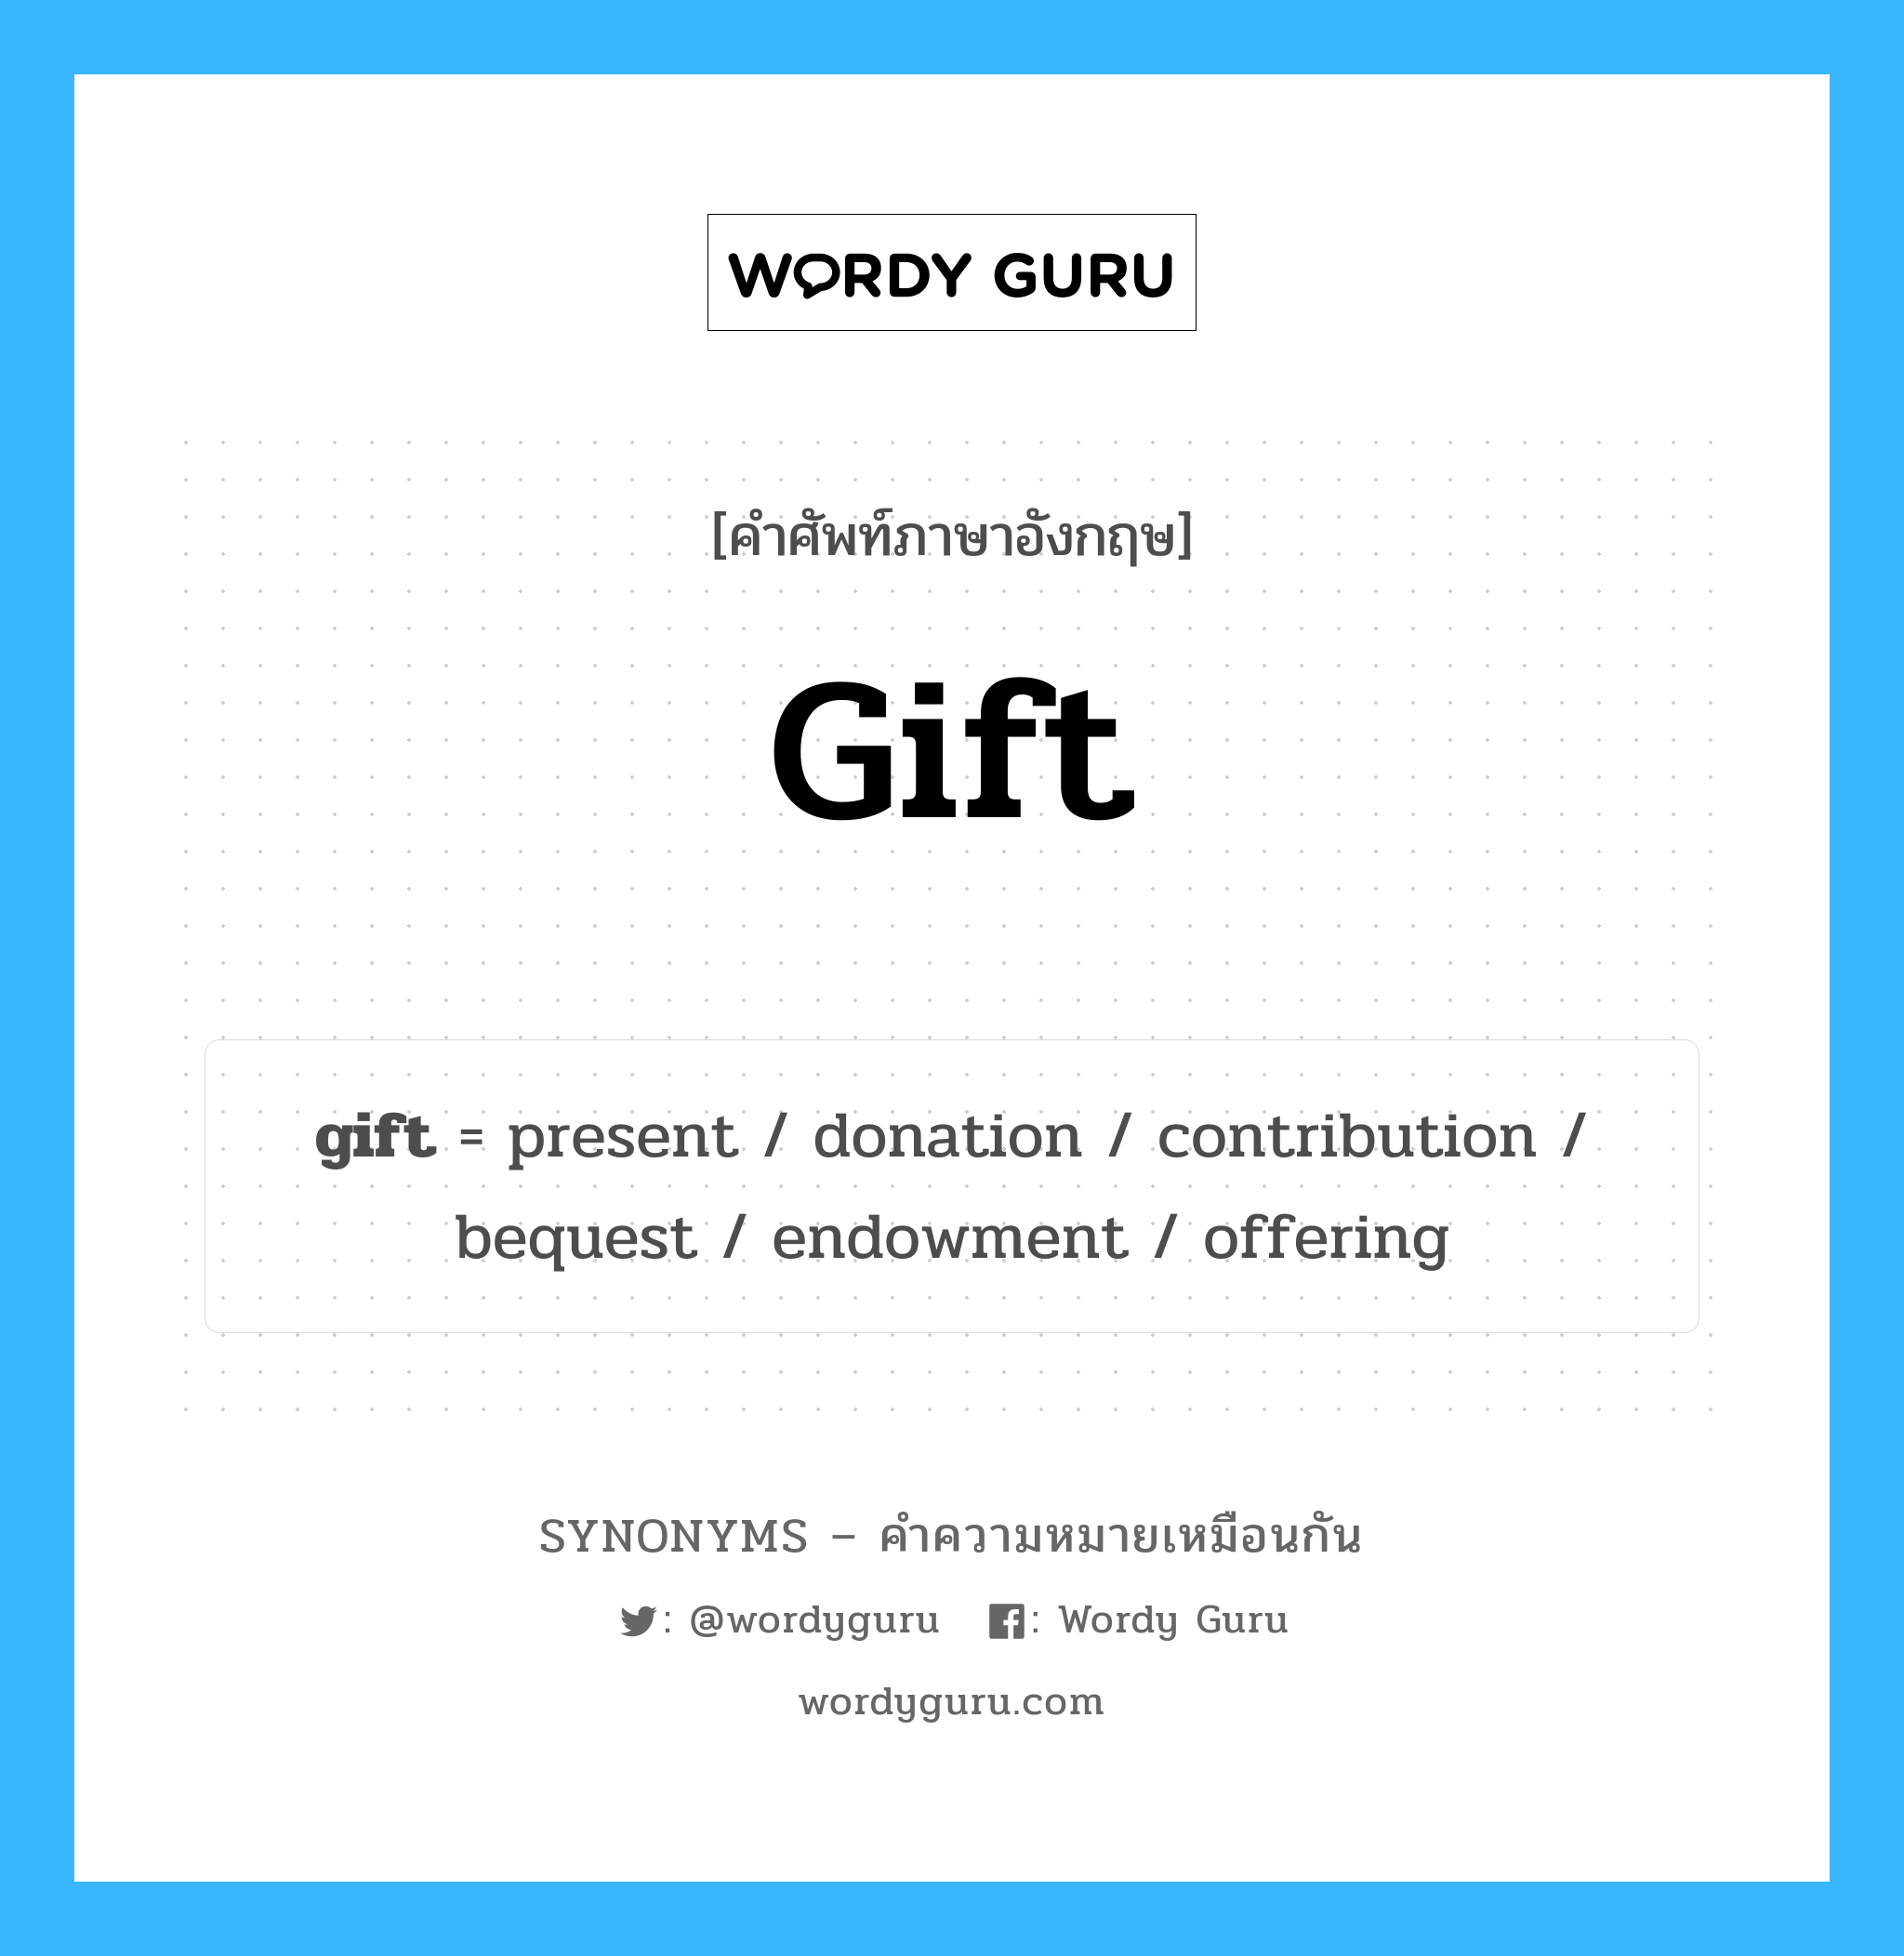 endowment เป็นหนึ่งใน gift และมีคำอื่น ๆ อีกดังนี้, คำศัพท์ภาษาอังกฤษ endowment ความหมายคล้ายกันกับ gift แปลว่า พรสวรรค์ หมวด gift